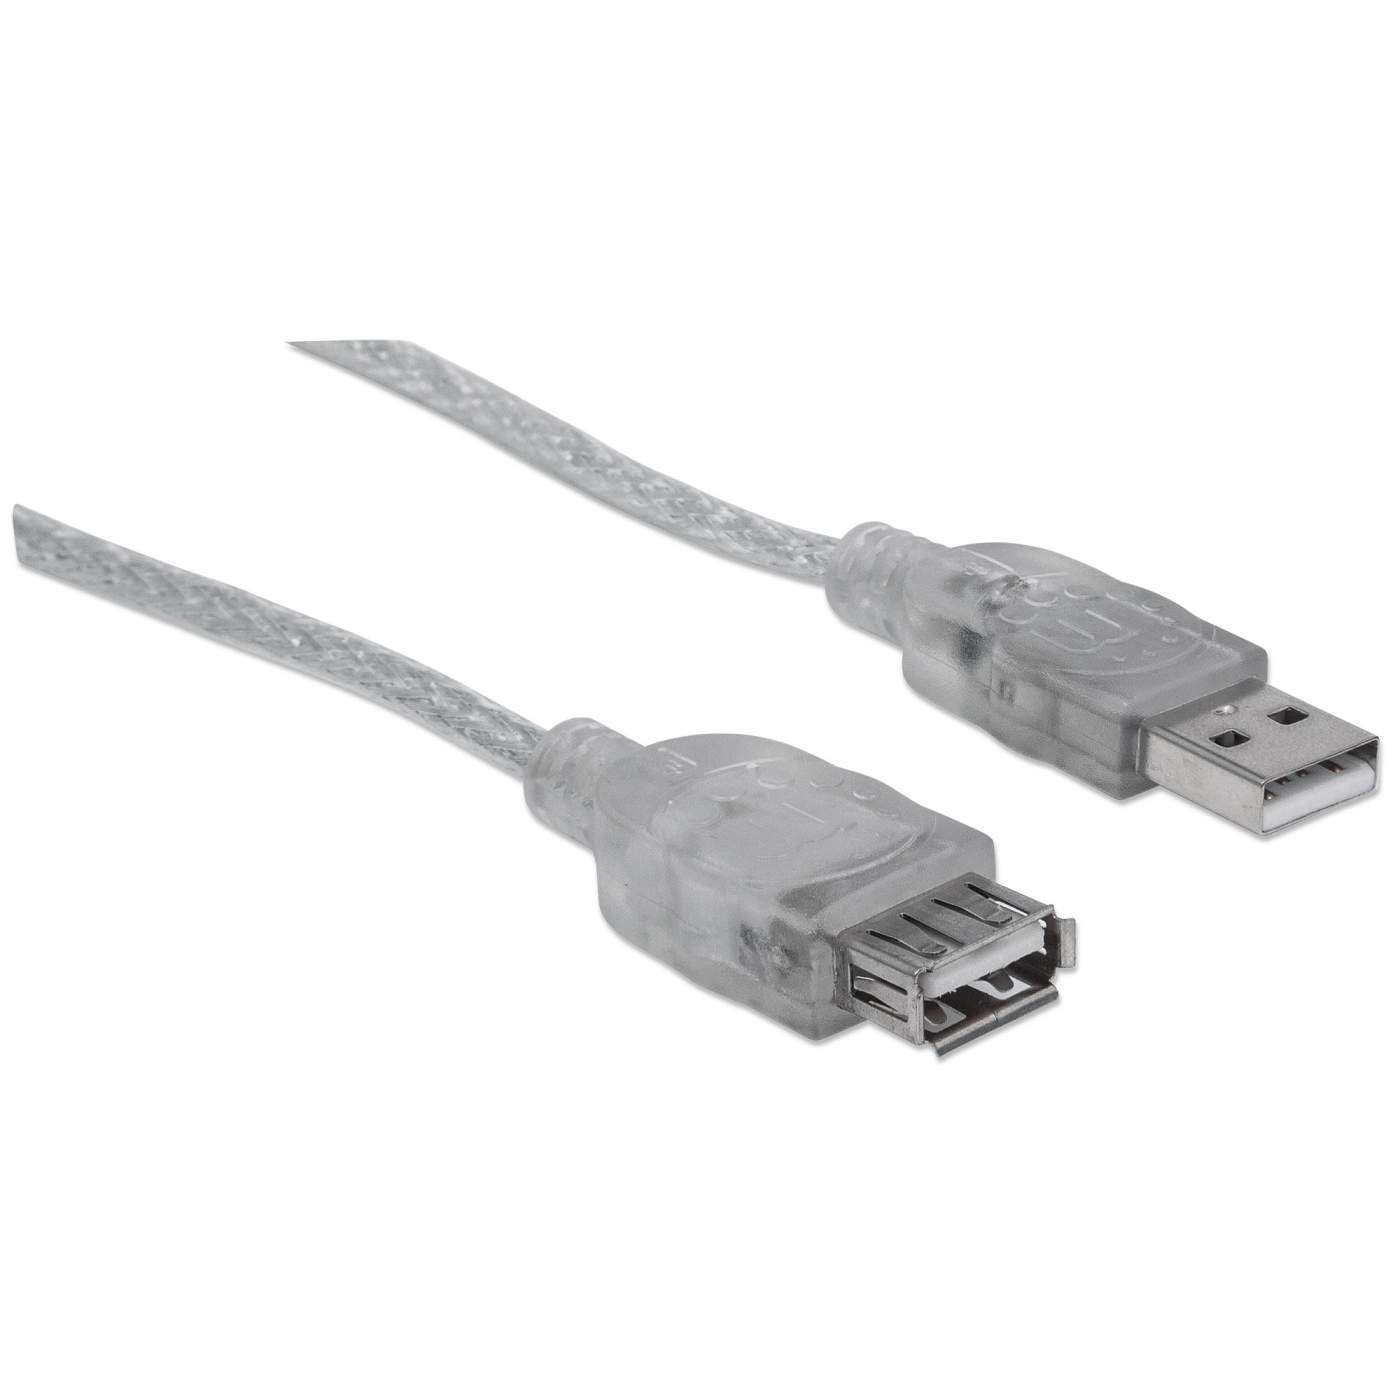 NT50-B  Extensor Alargador USB 2.0 por Cable Cat5 o Cat6 RJ45 - hasta 50m  de Alcance - Juego Extensor Adaptador de Puerto USB de Alta Velocidad - Ali